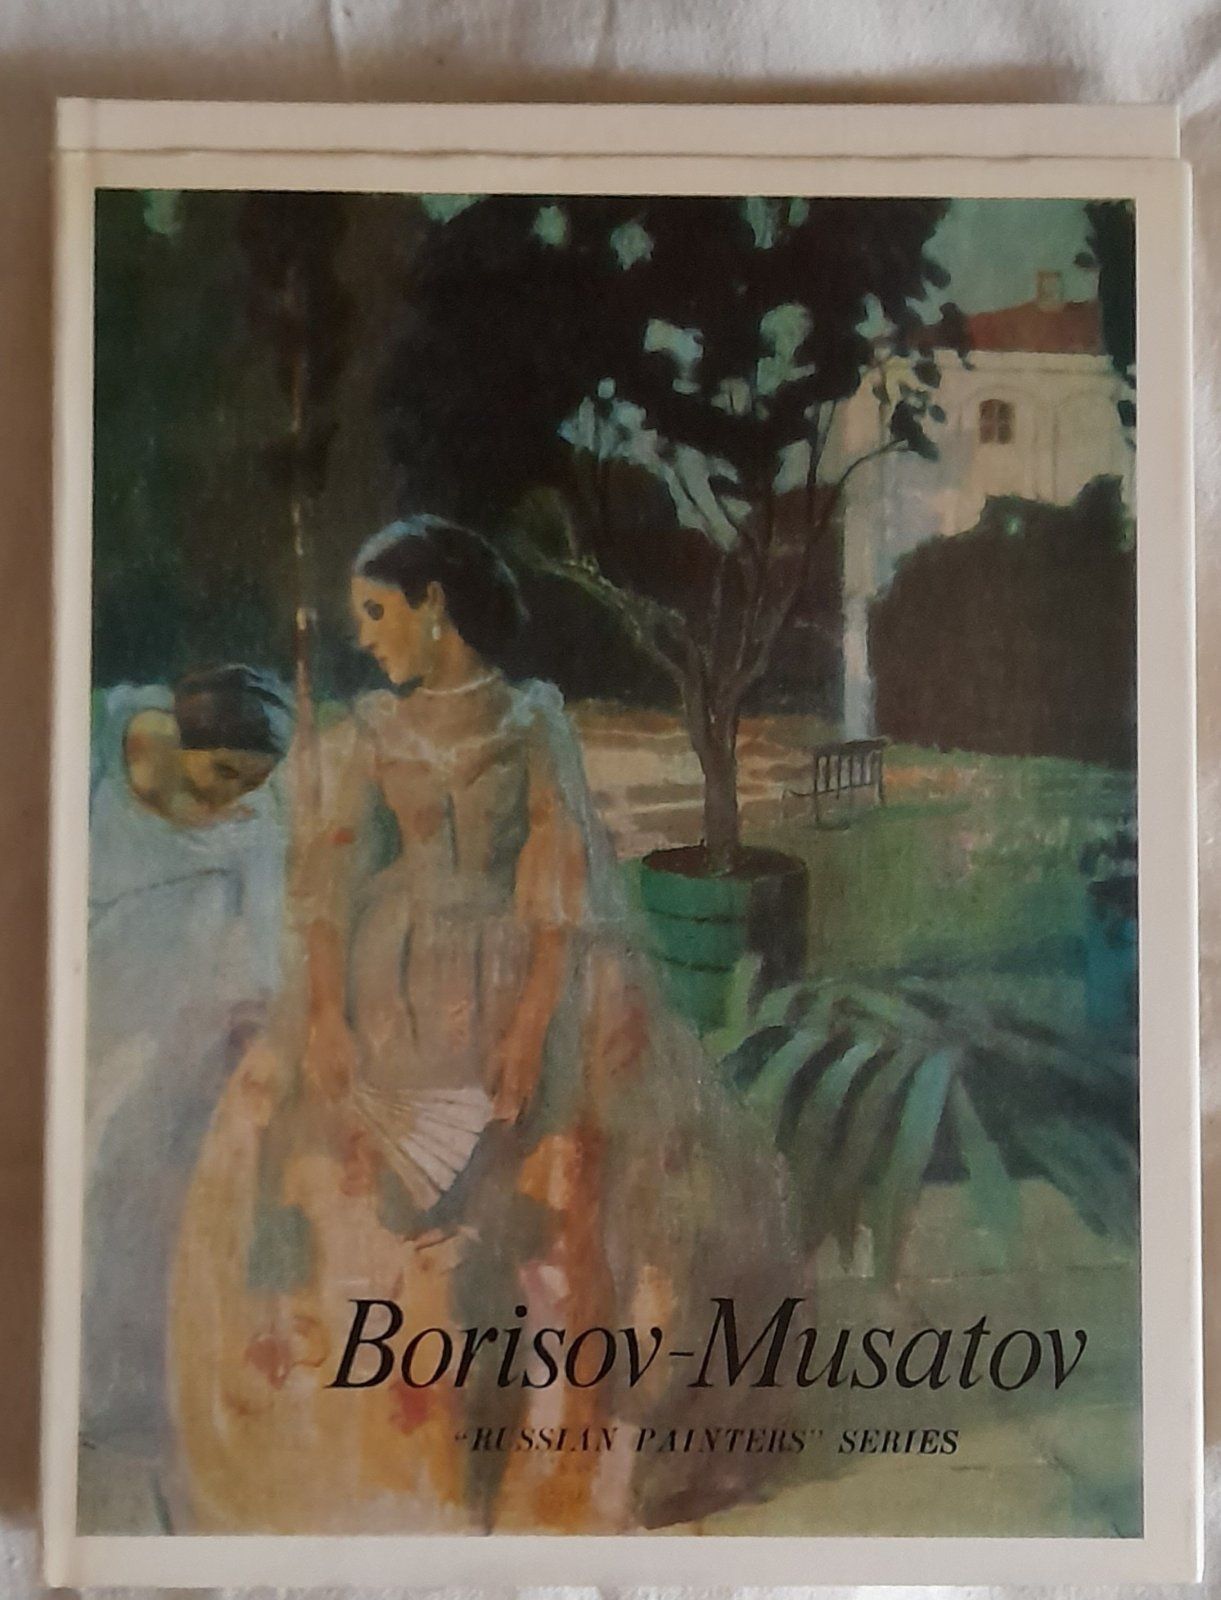 Книга -альбом Борисов-Мусатов  на аглийском и русском языках